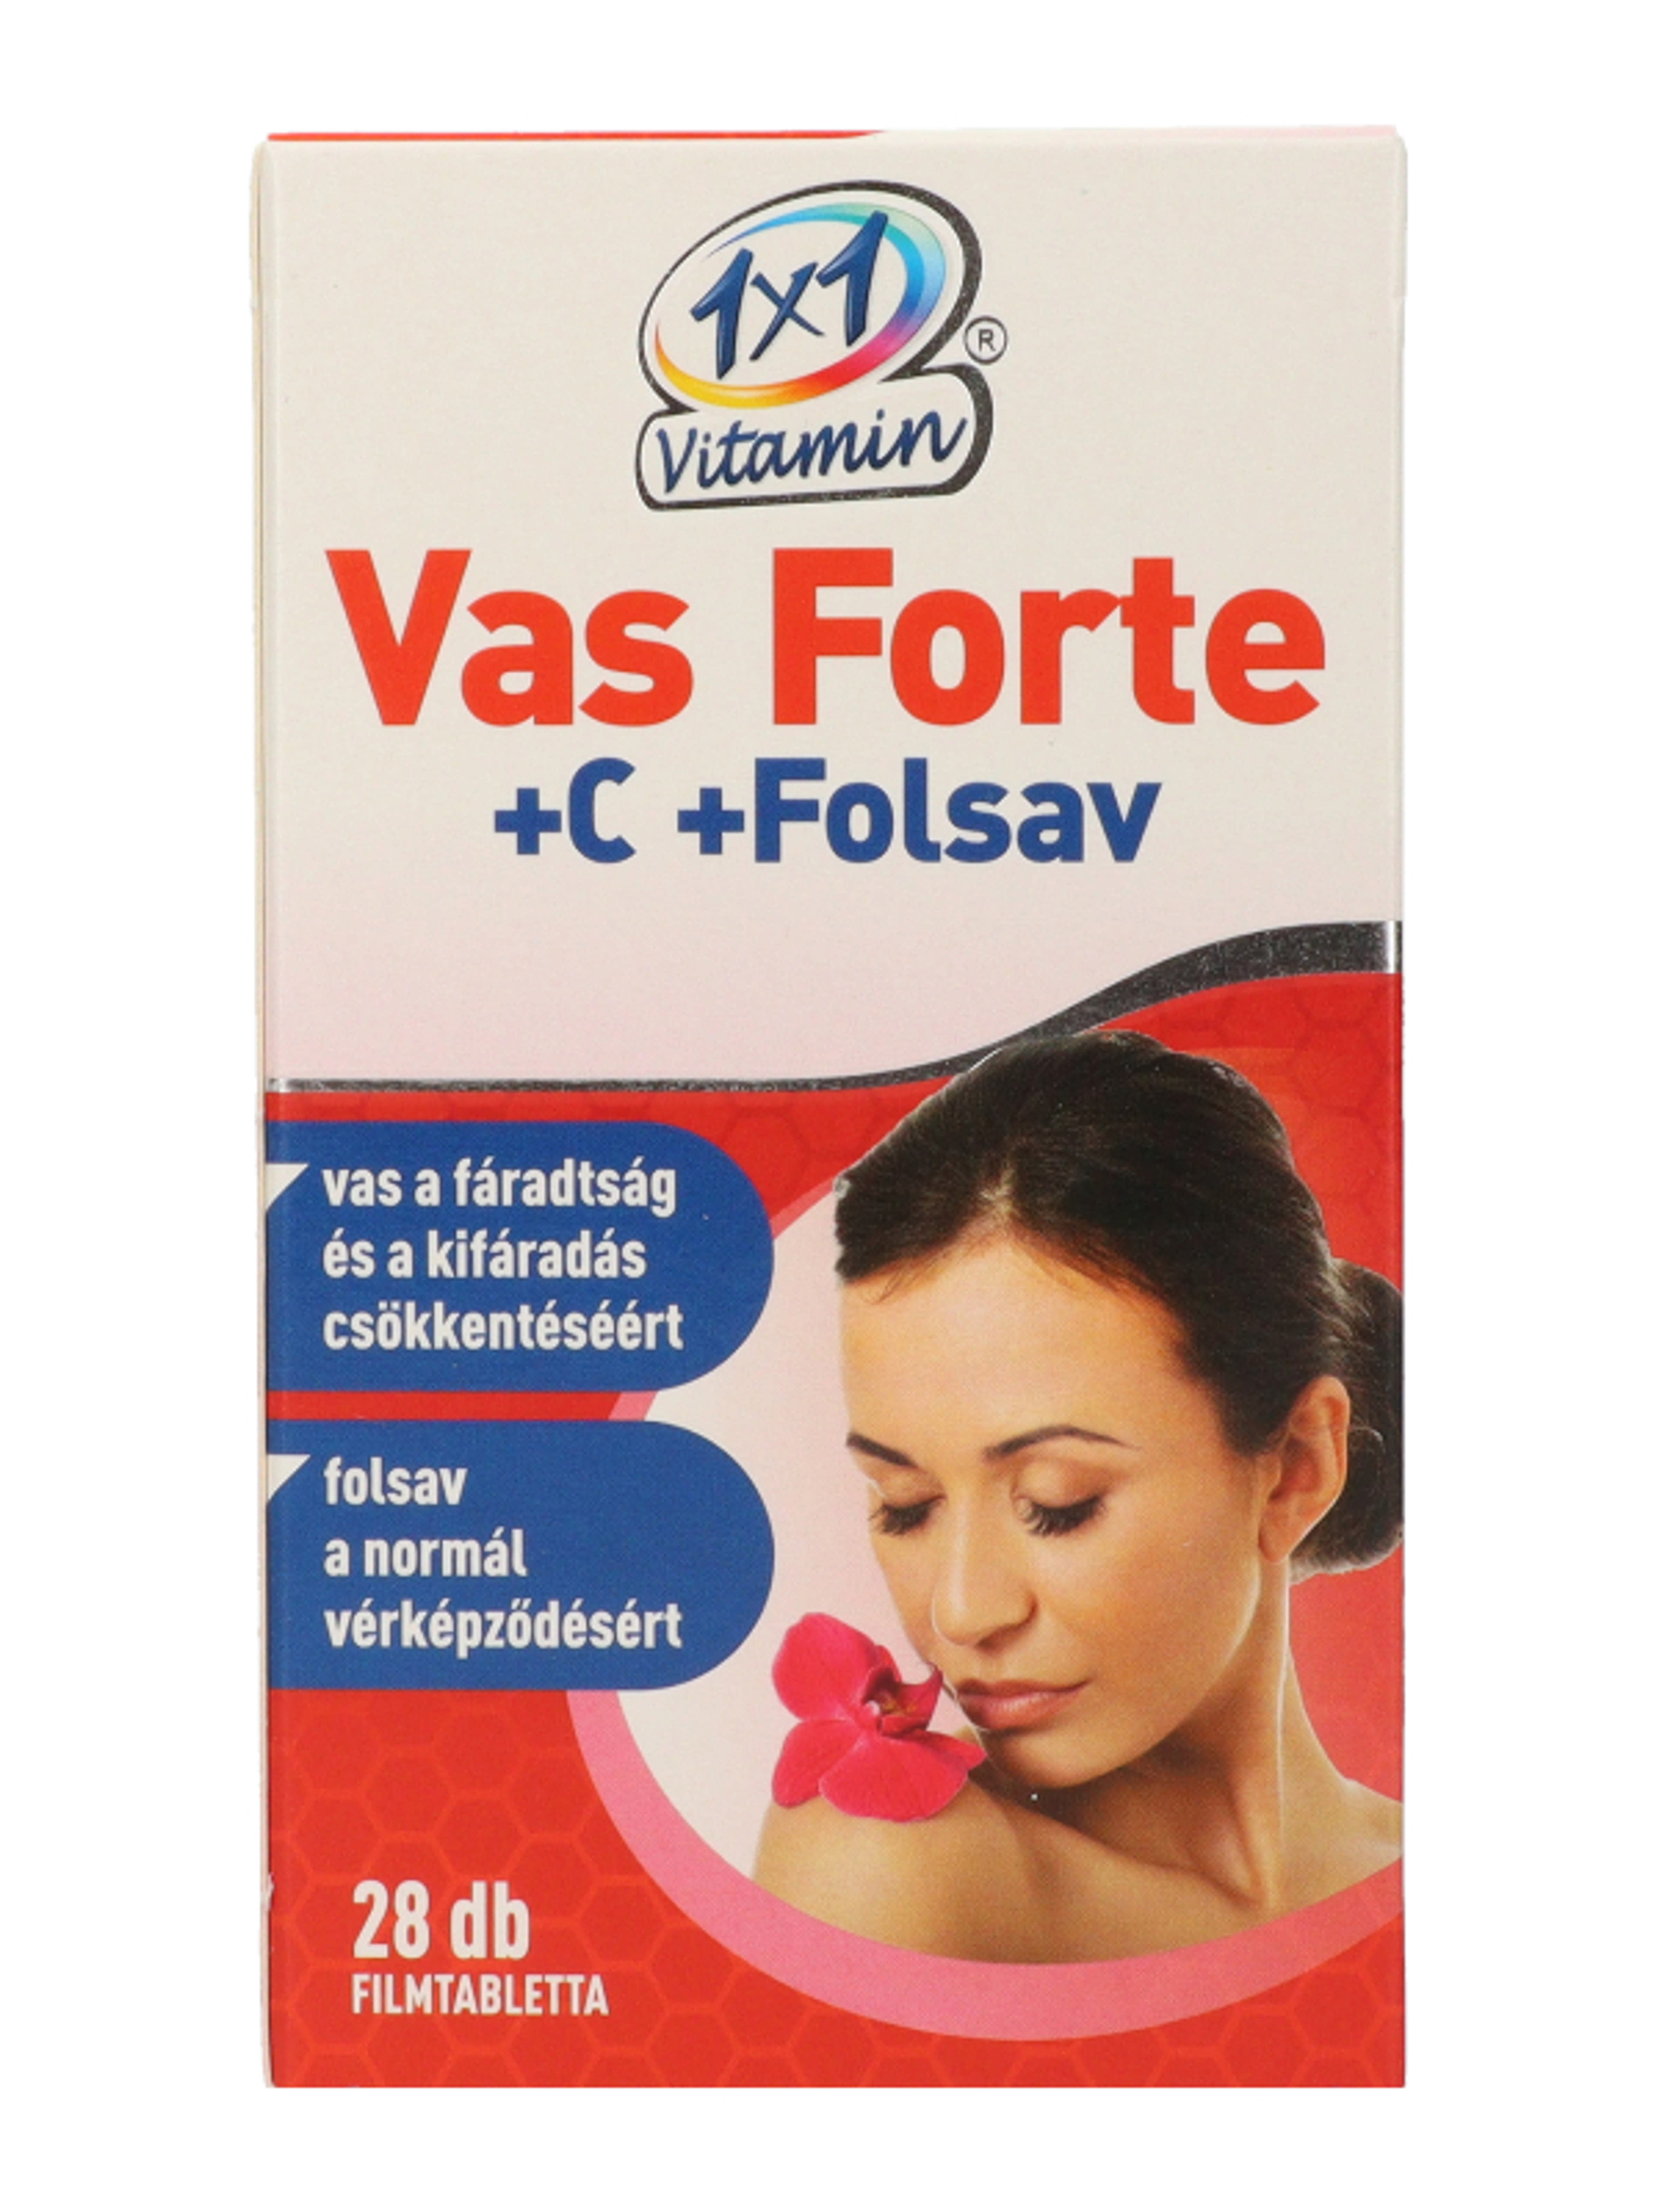 1x1 Vitamin Vas Forte Bioperin 500mg Tabletta - 28 db-2